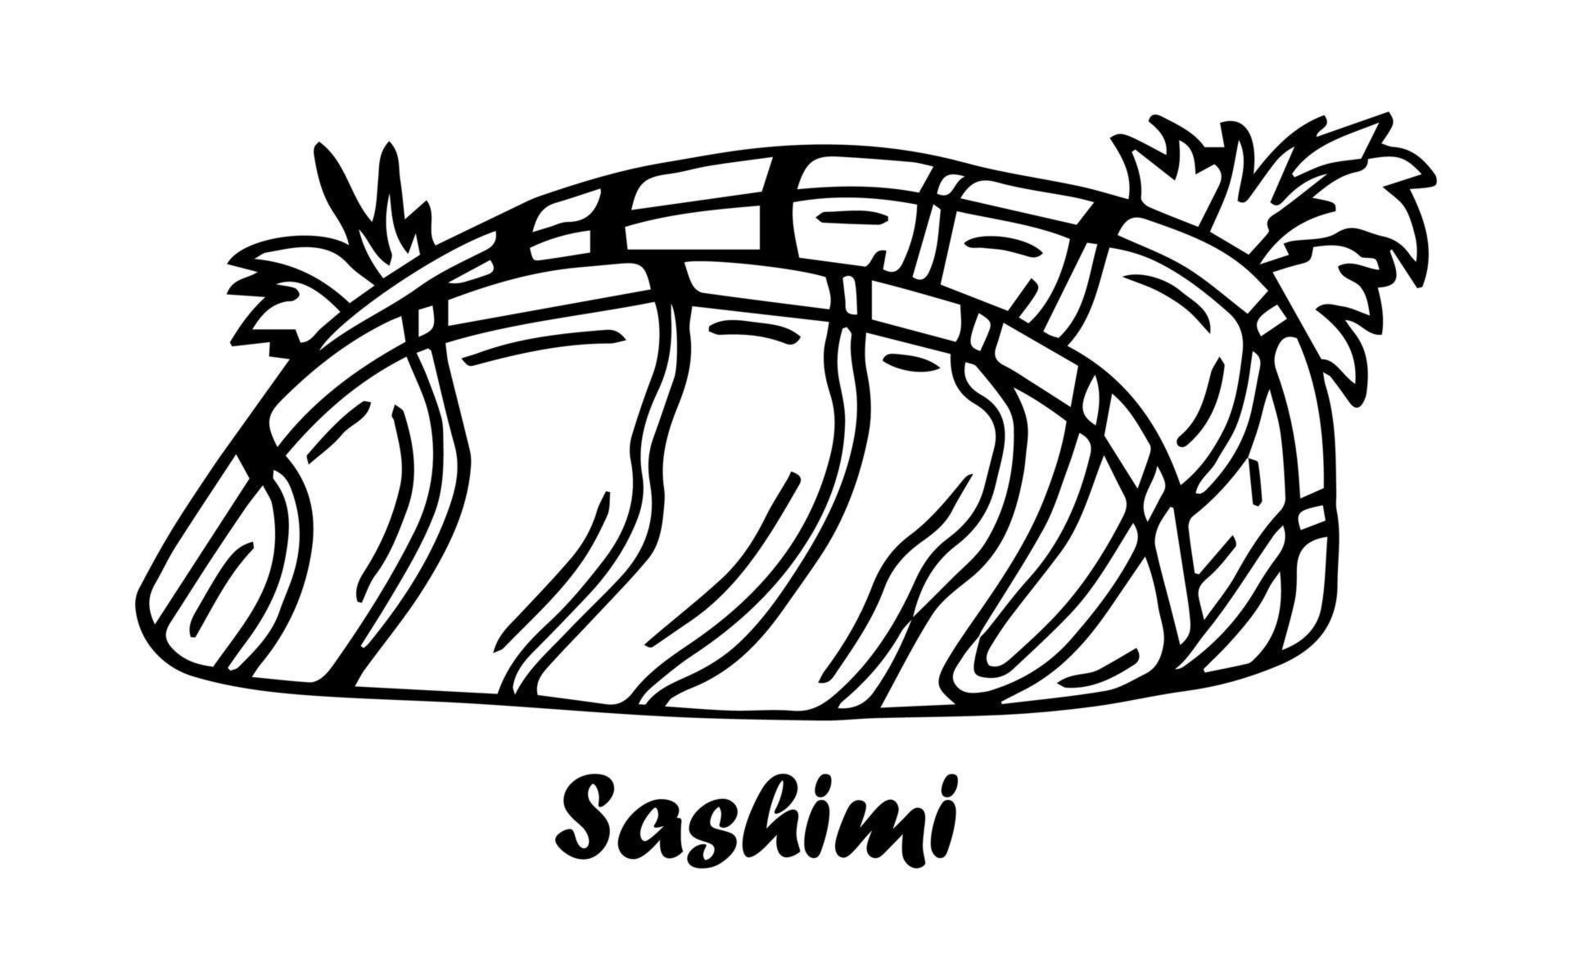 Lachs-Sashimi. Zutat der japanischen Küche. vintage handgezeichnete skizze gravur vektorillustration. vektor